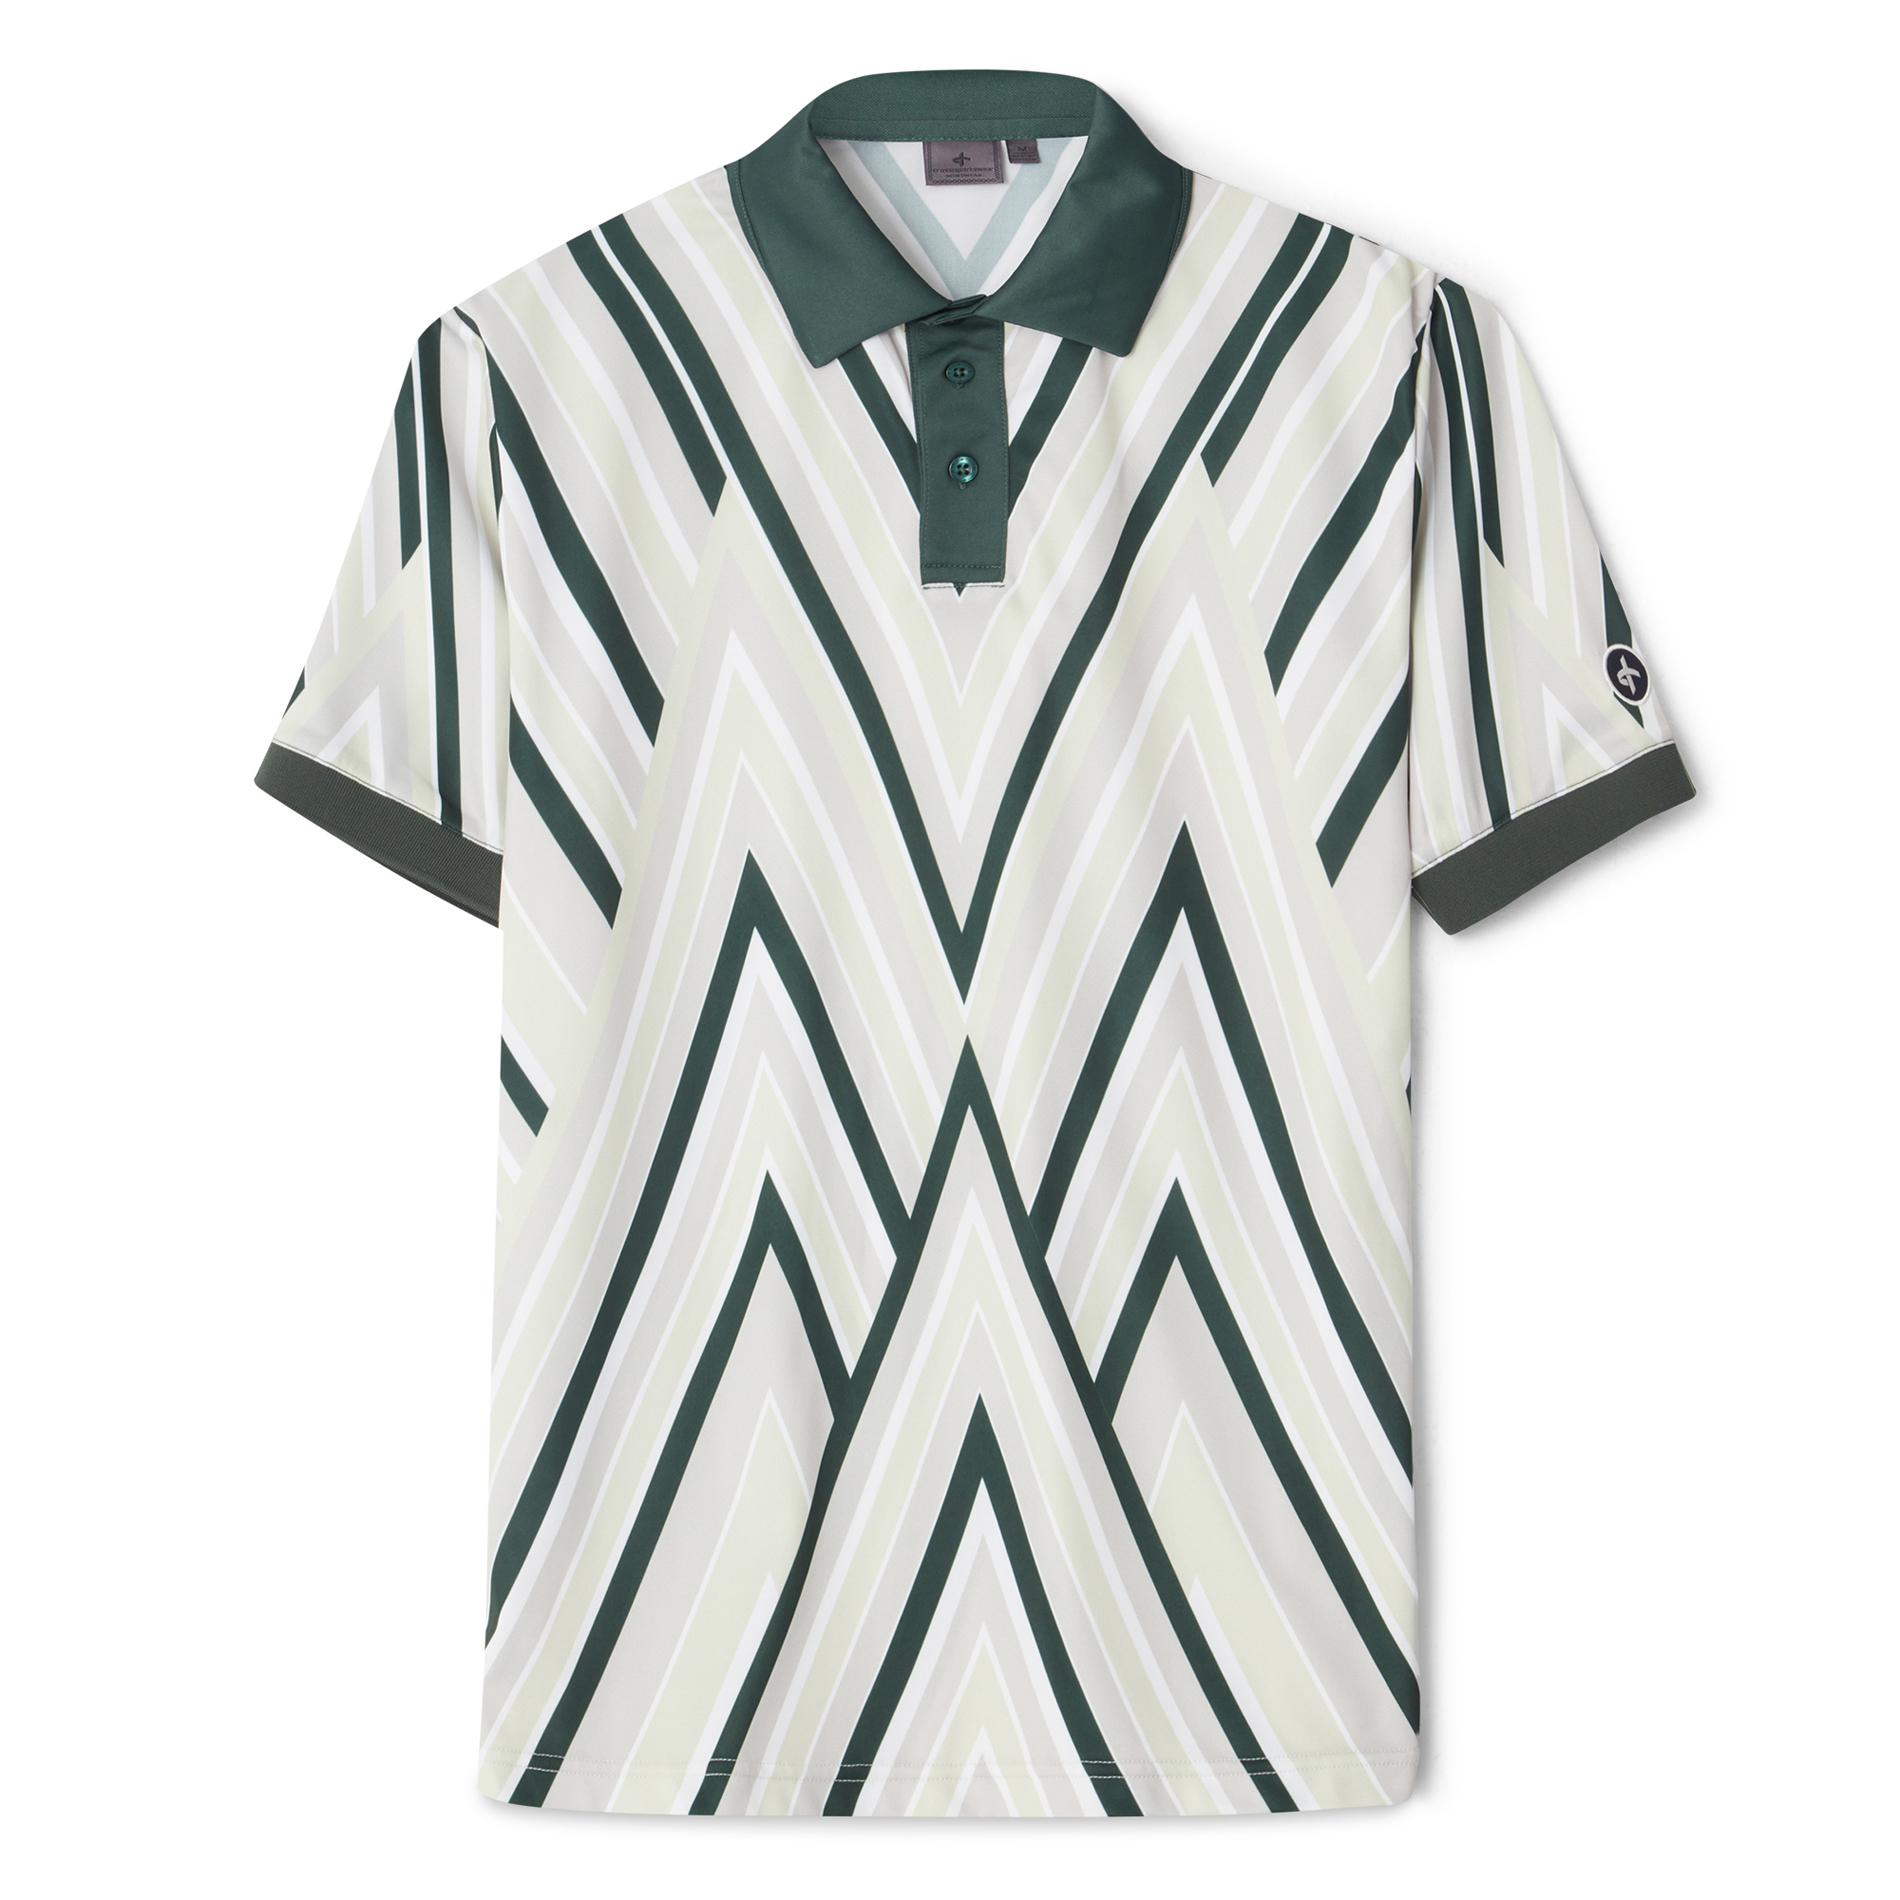 m_point_polo_jungle-green_cross_sportwear